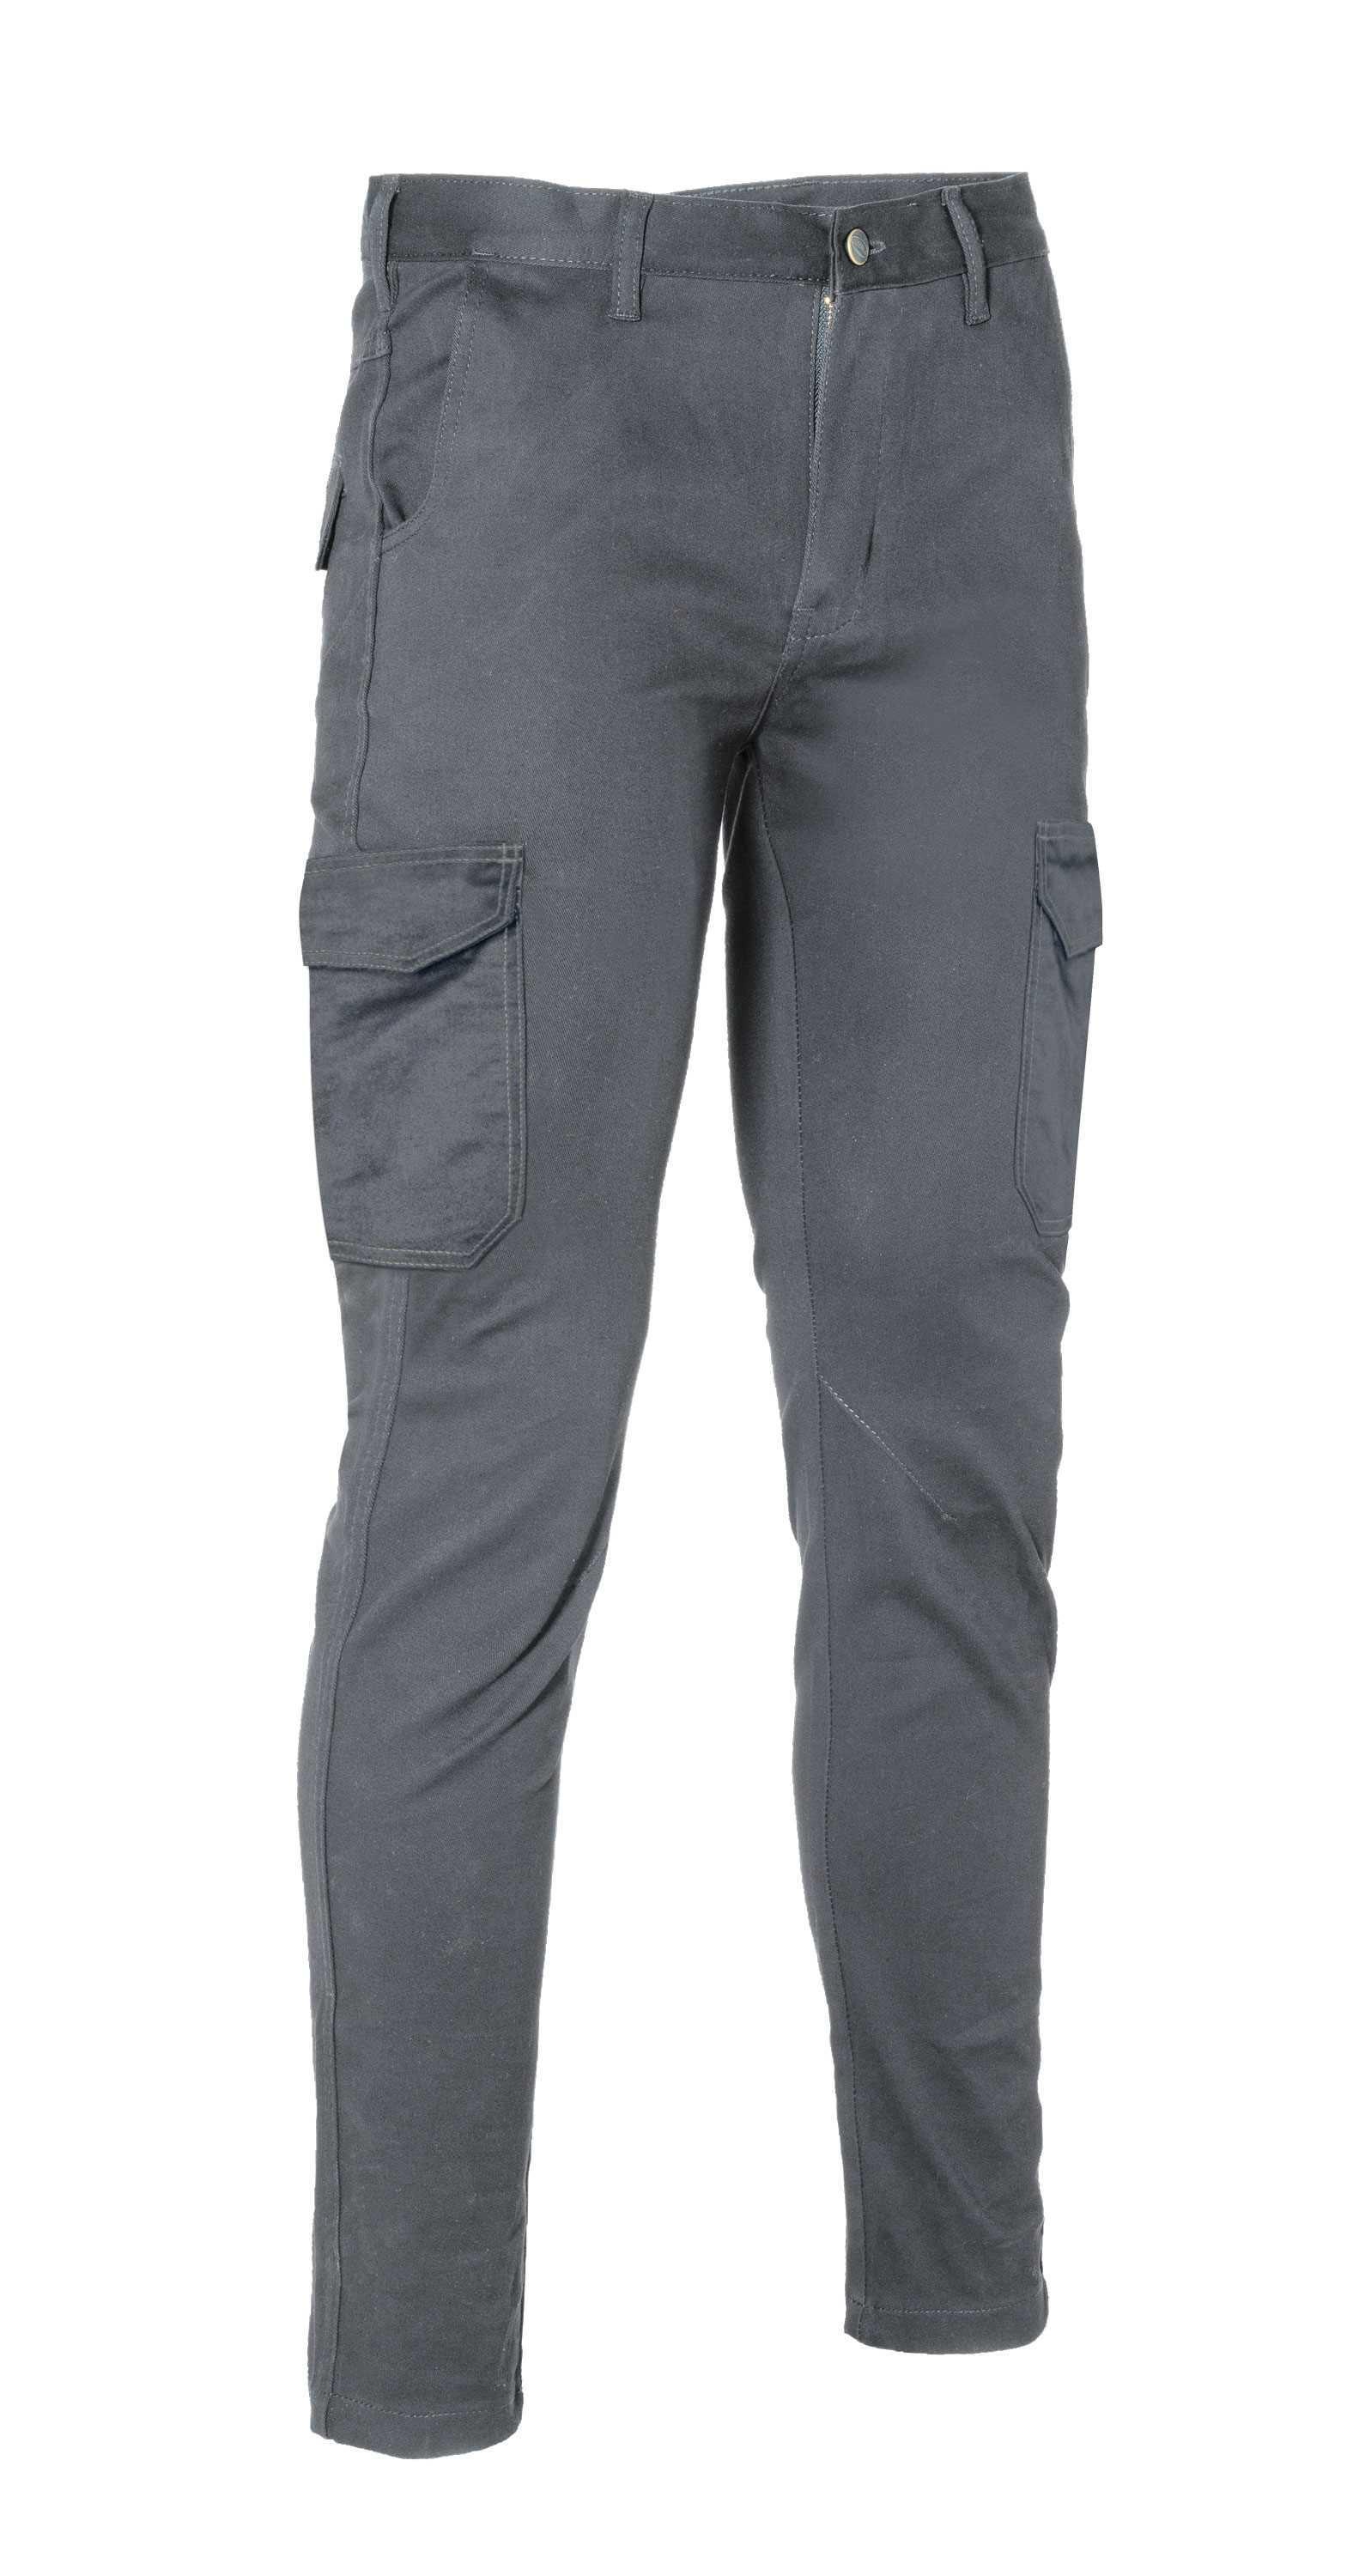 Pantaloni invernali da lavoro grigio taglia 48 Logica LOGIWINTER2-48